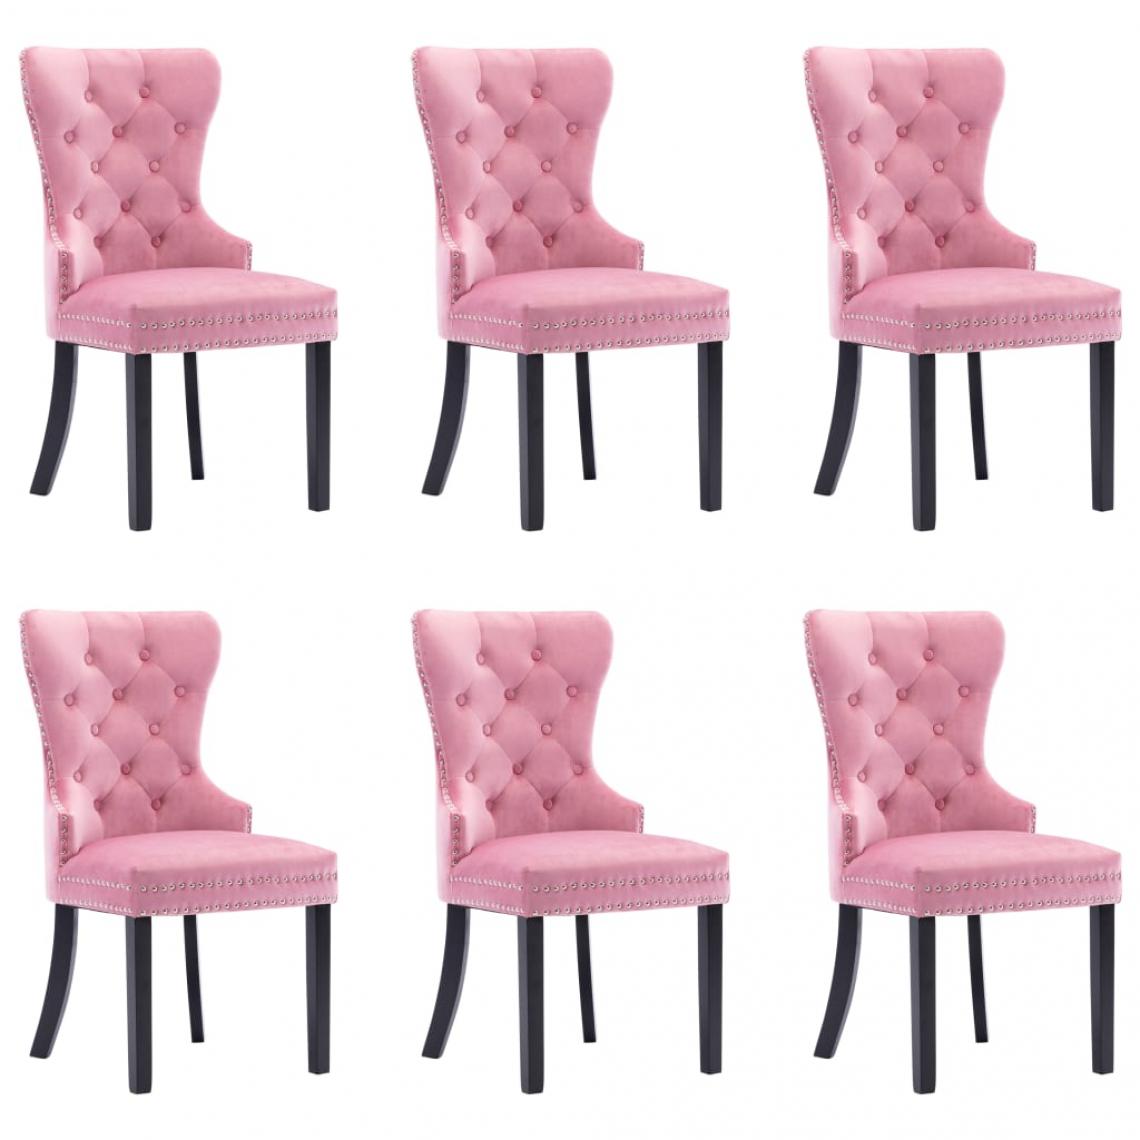 Decoshop26 - Lot de 6 chaises de salle à manger cuisine design classique velours rose CDS022788 - Chaises